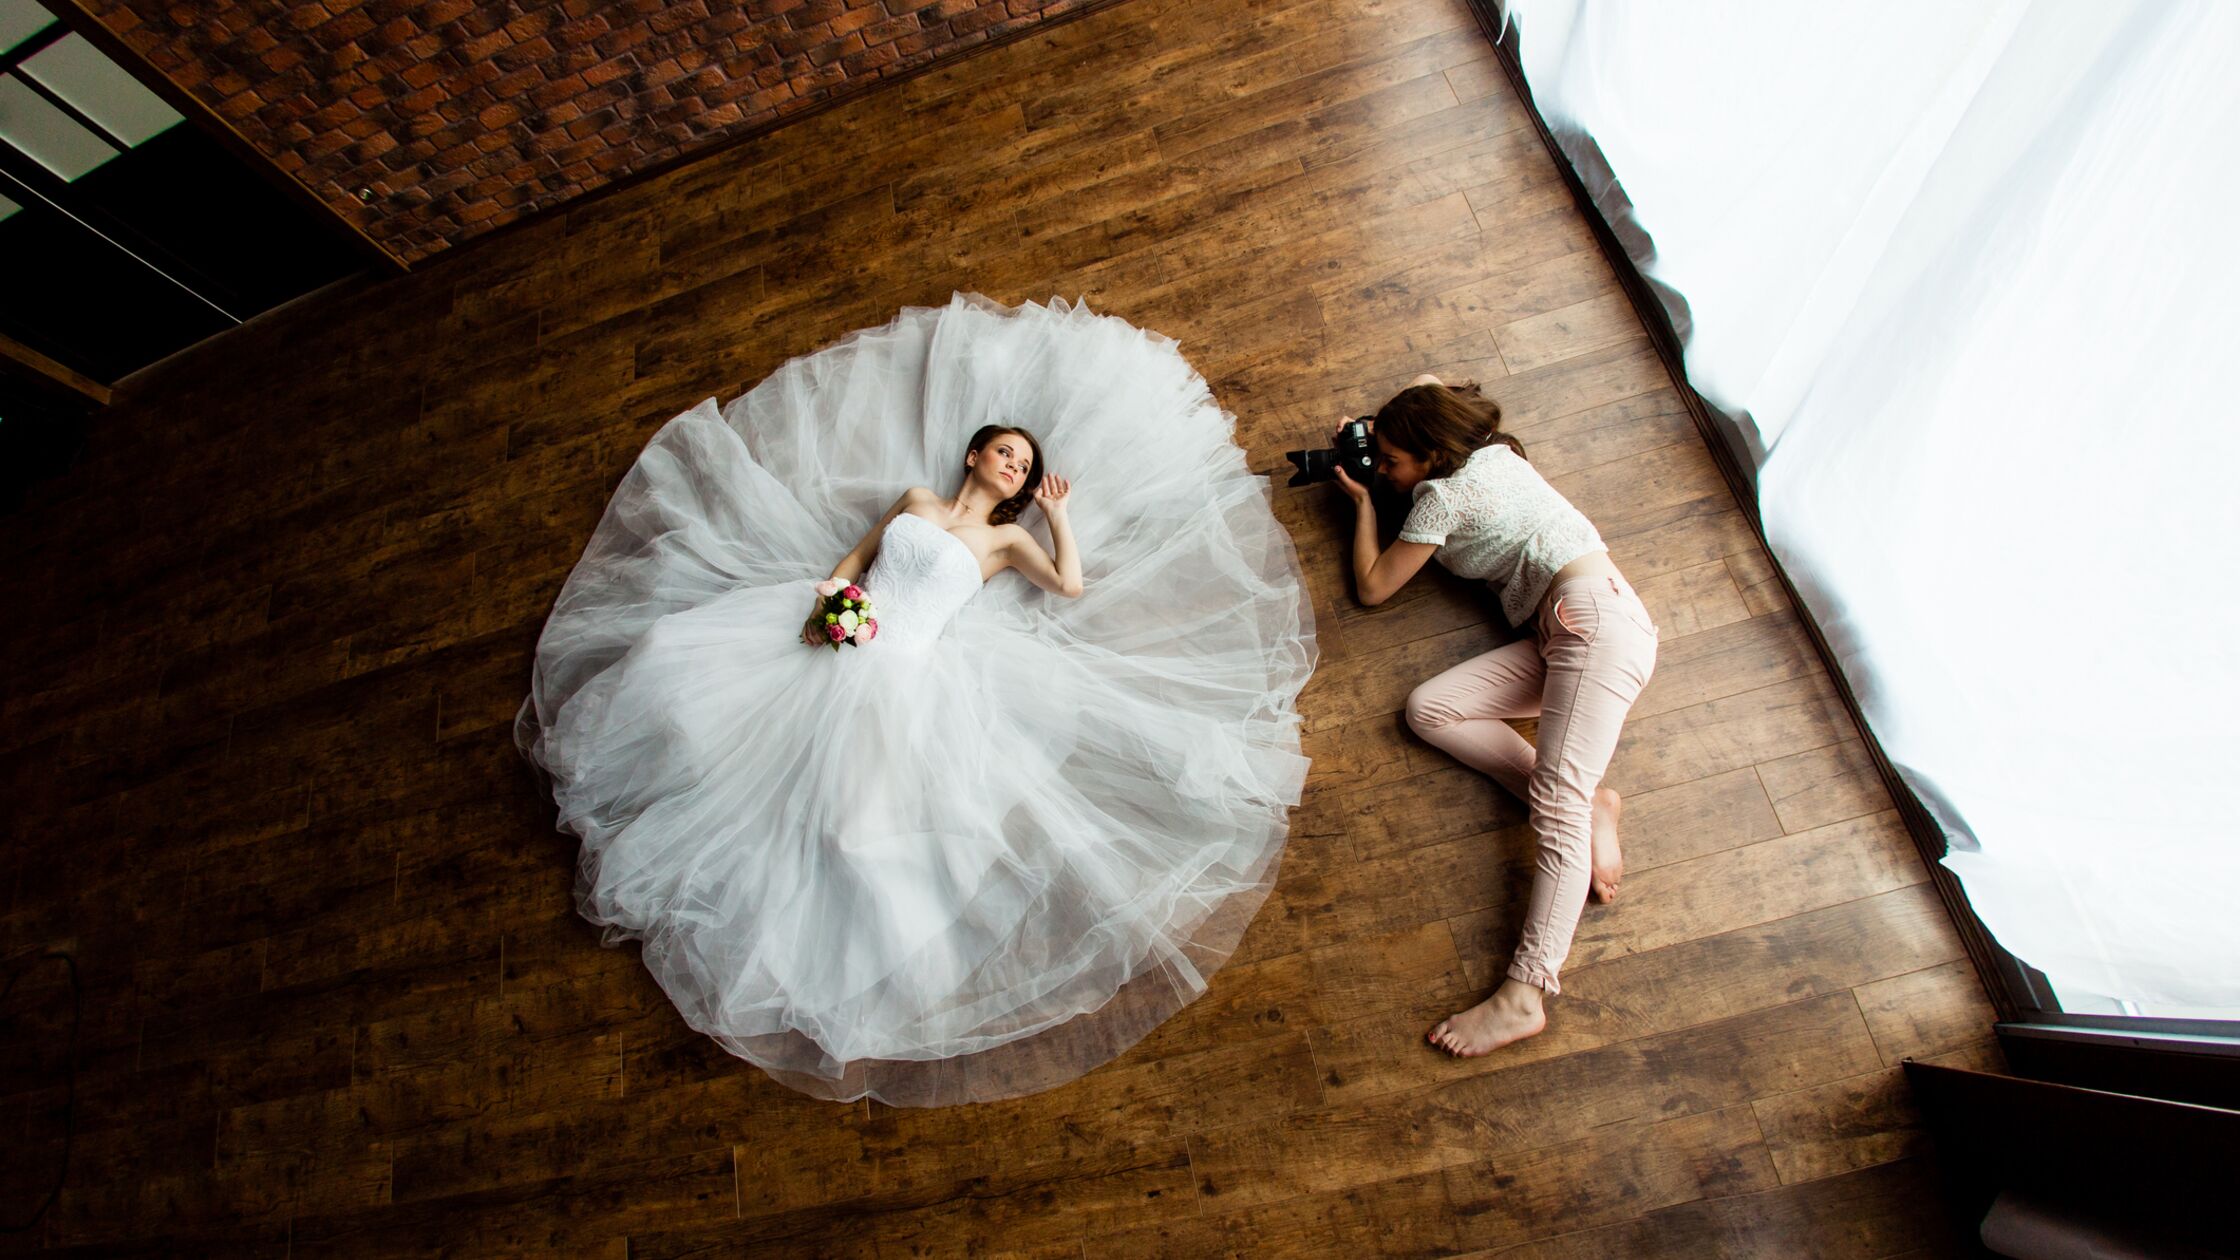 Fotografin und und Model beim Brautshooting auf dem Fußboden in einer leeren Wohnung